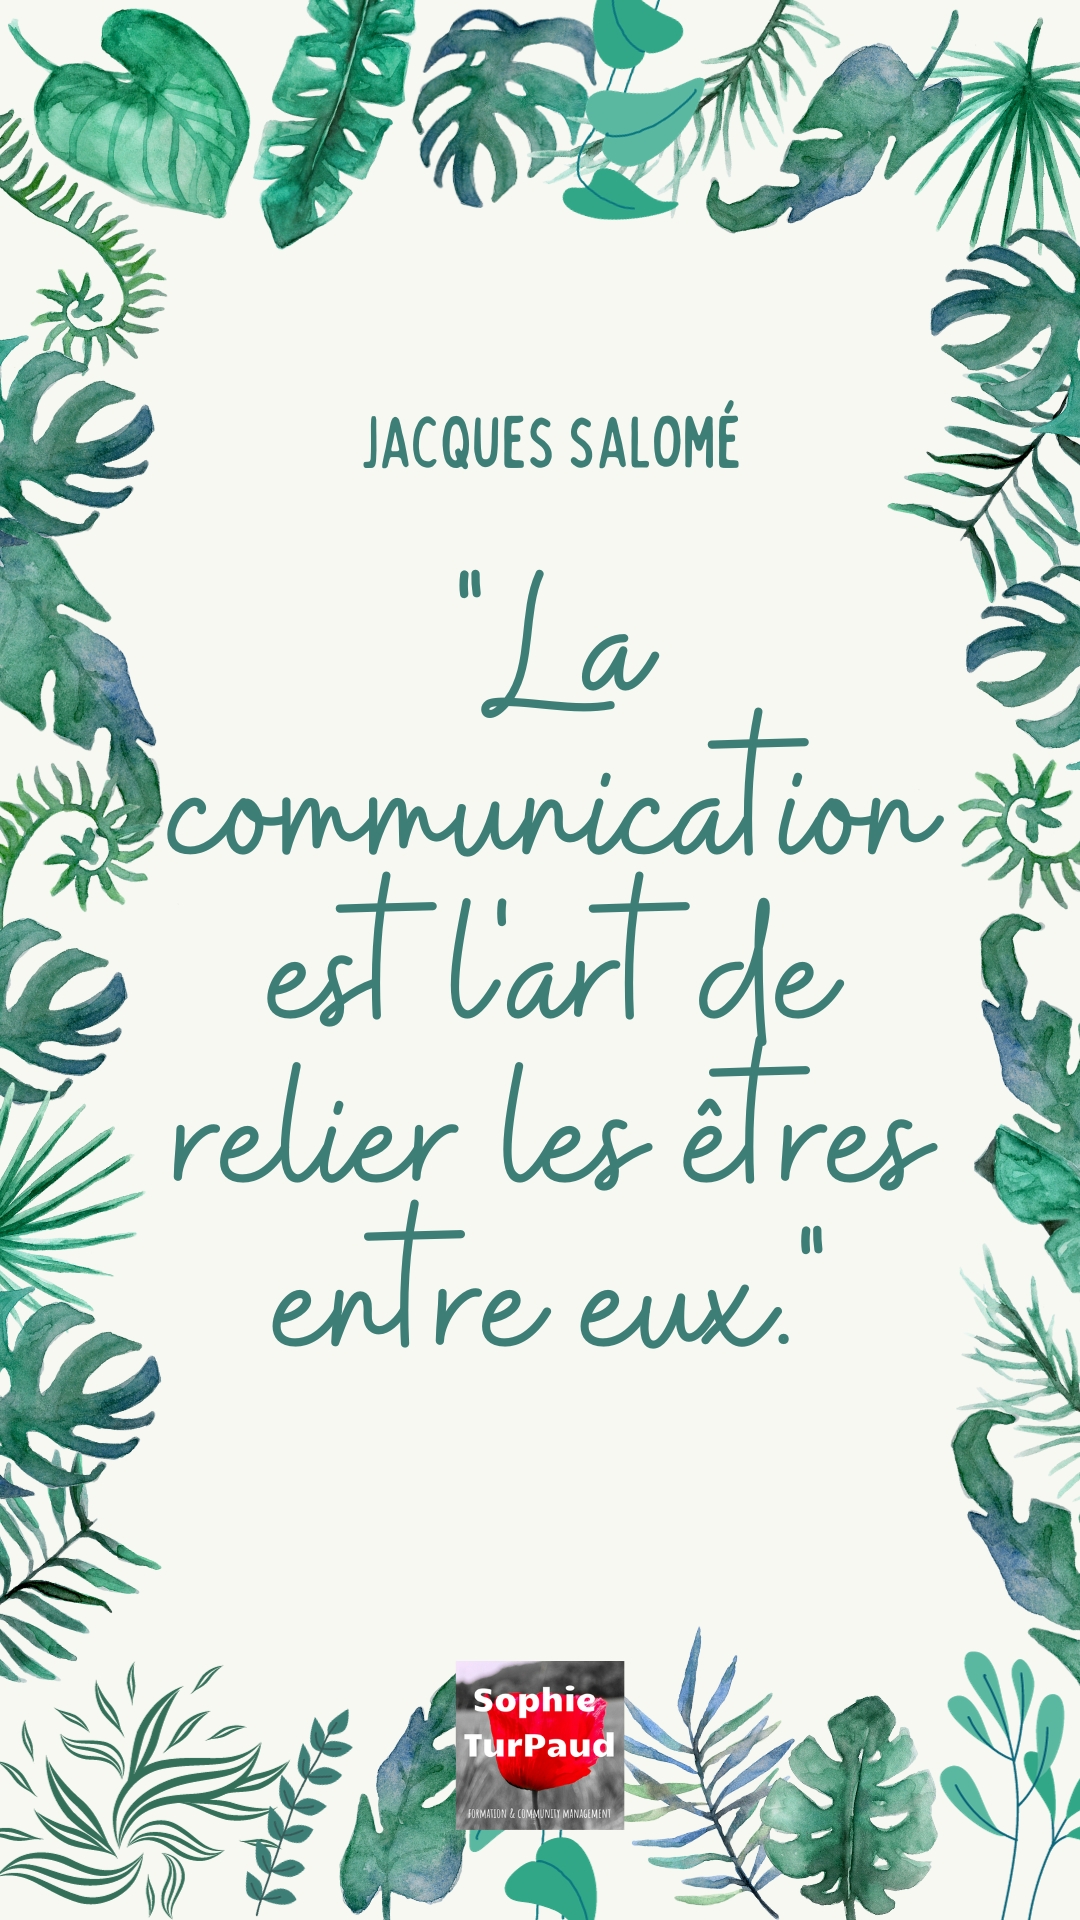 10 citations Jacques Salomé